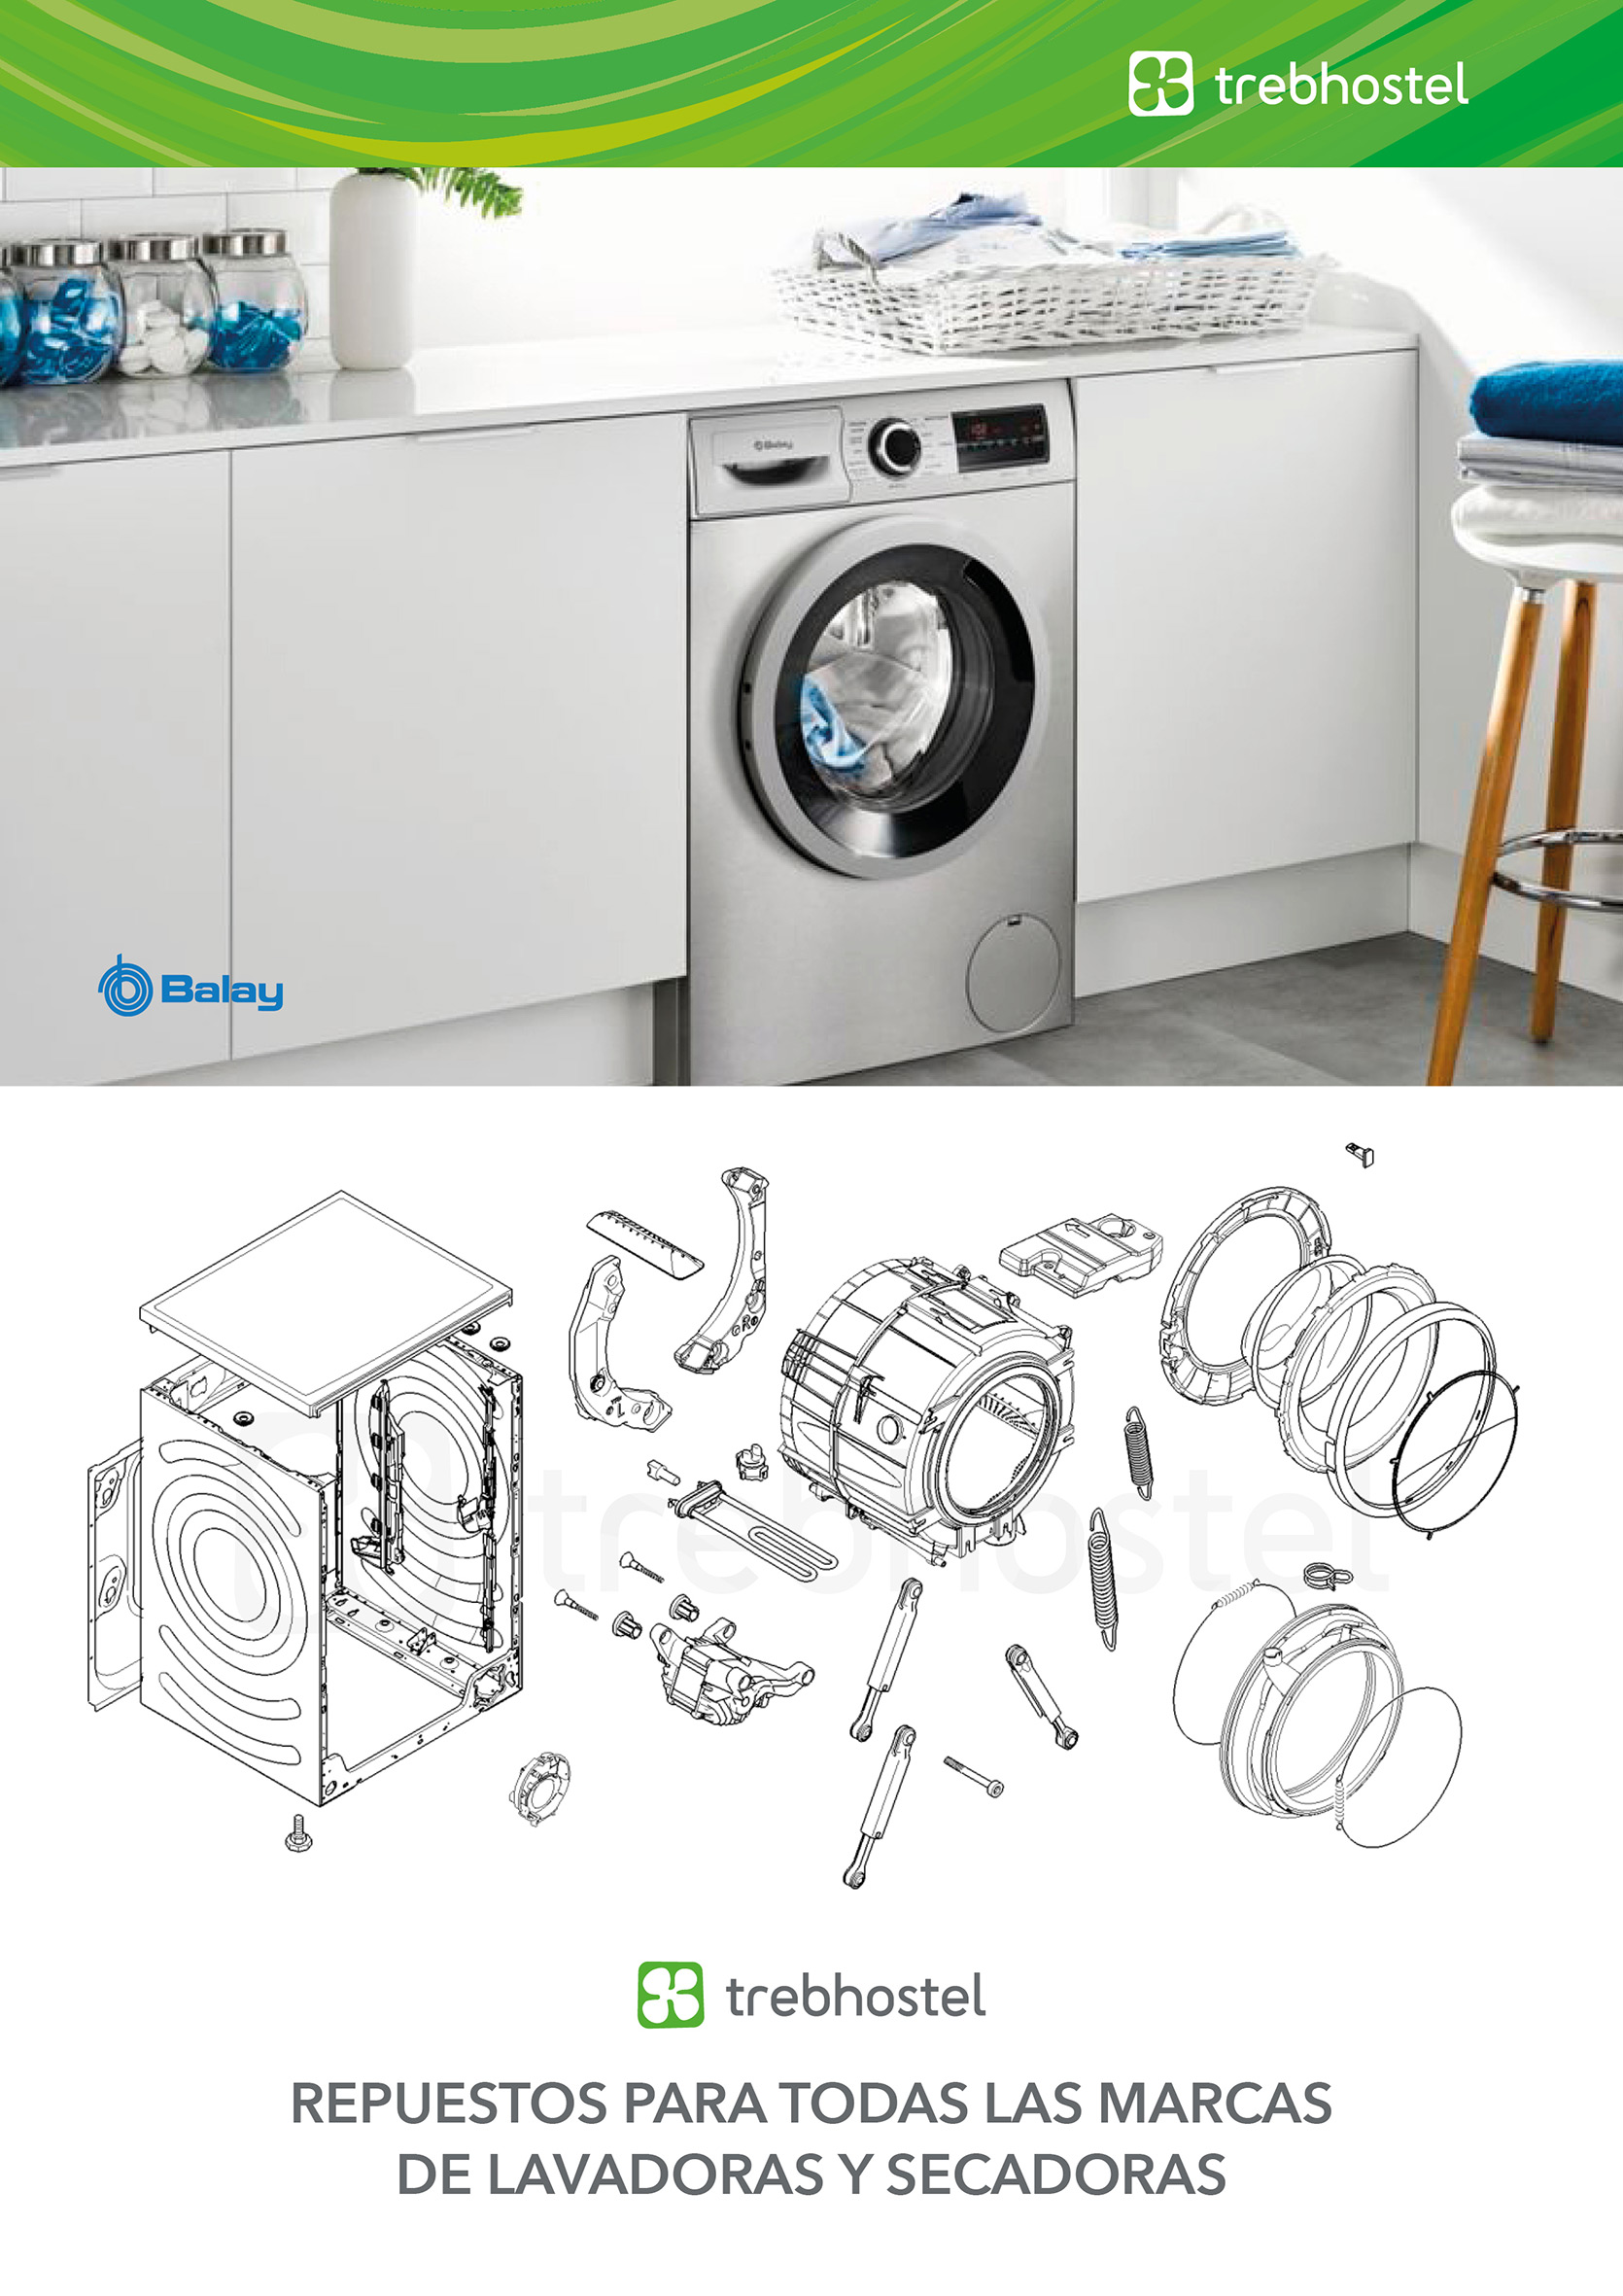 Repuestos para lavadora y secadora - Trebhostel